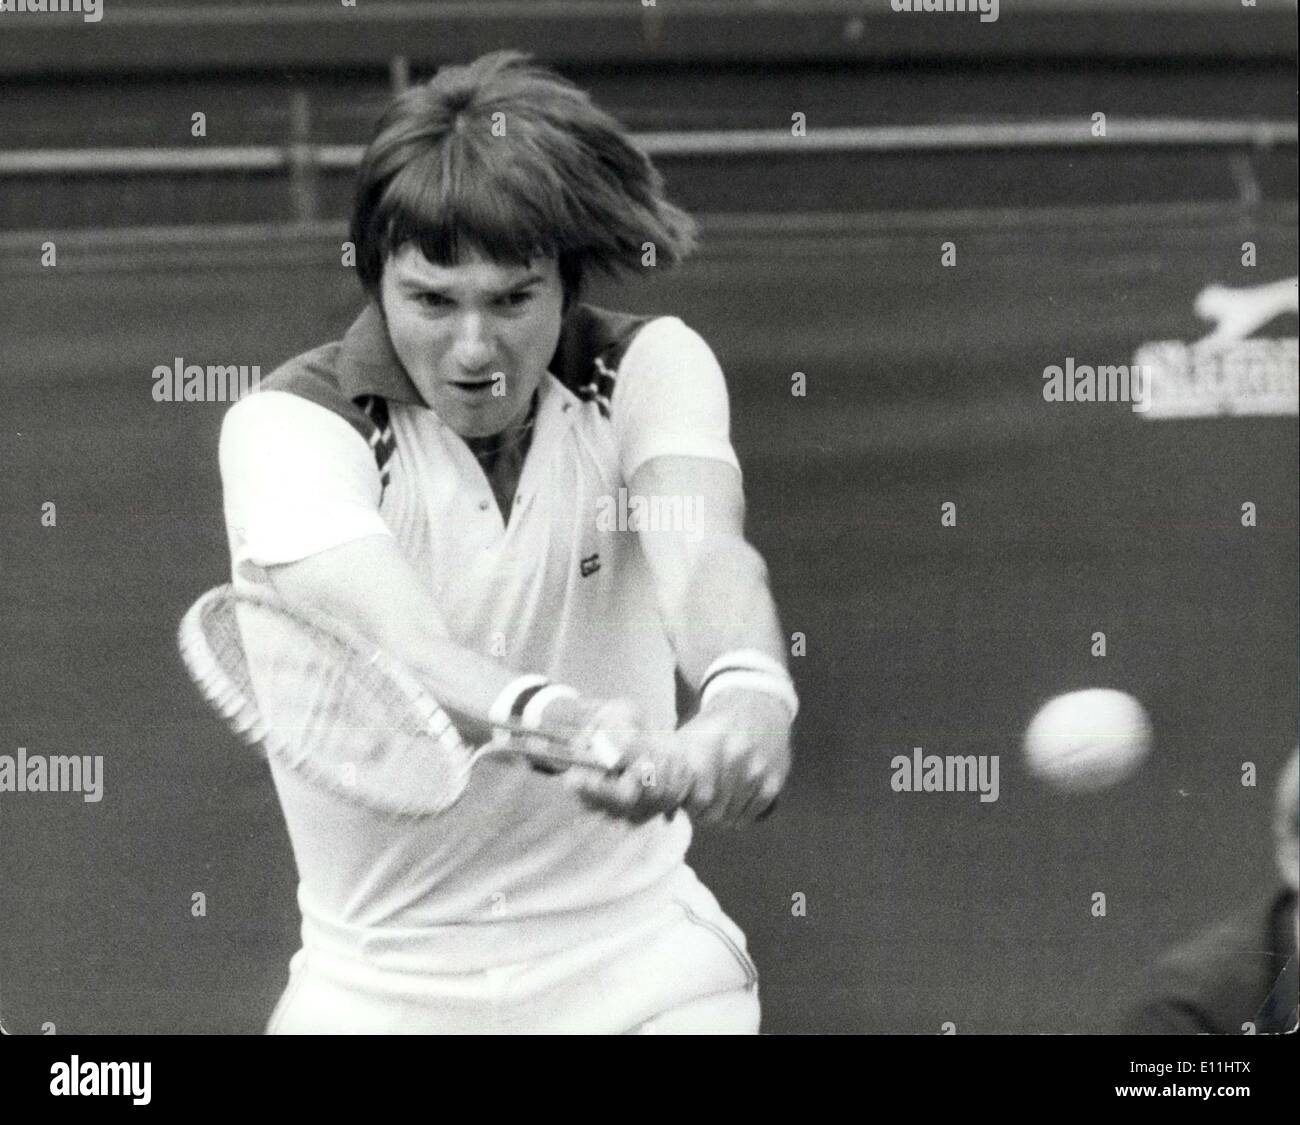 Giugno 29, 1978 - Wimbledon Tennis 78 Jimmy Connors batte Kim Warwick: Phot mostra Jimmy Connors d'America il n. 2 Le sementi visto ieri in azione nell'uomo singoli contro Kim Warwick dell Australia che ha battuto 6-3 7-5 2-6 6-4. Foto Stock